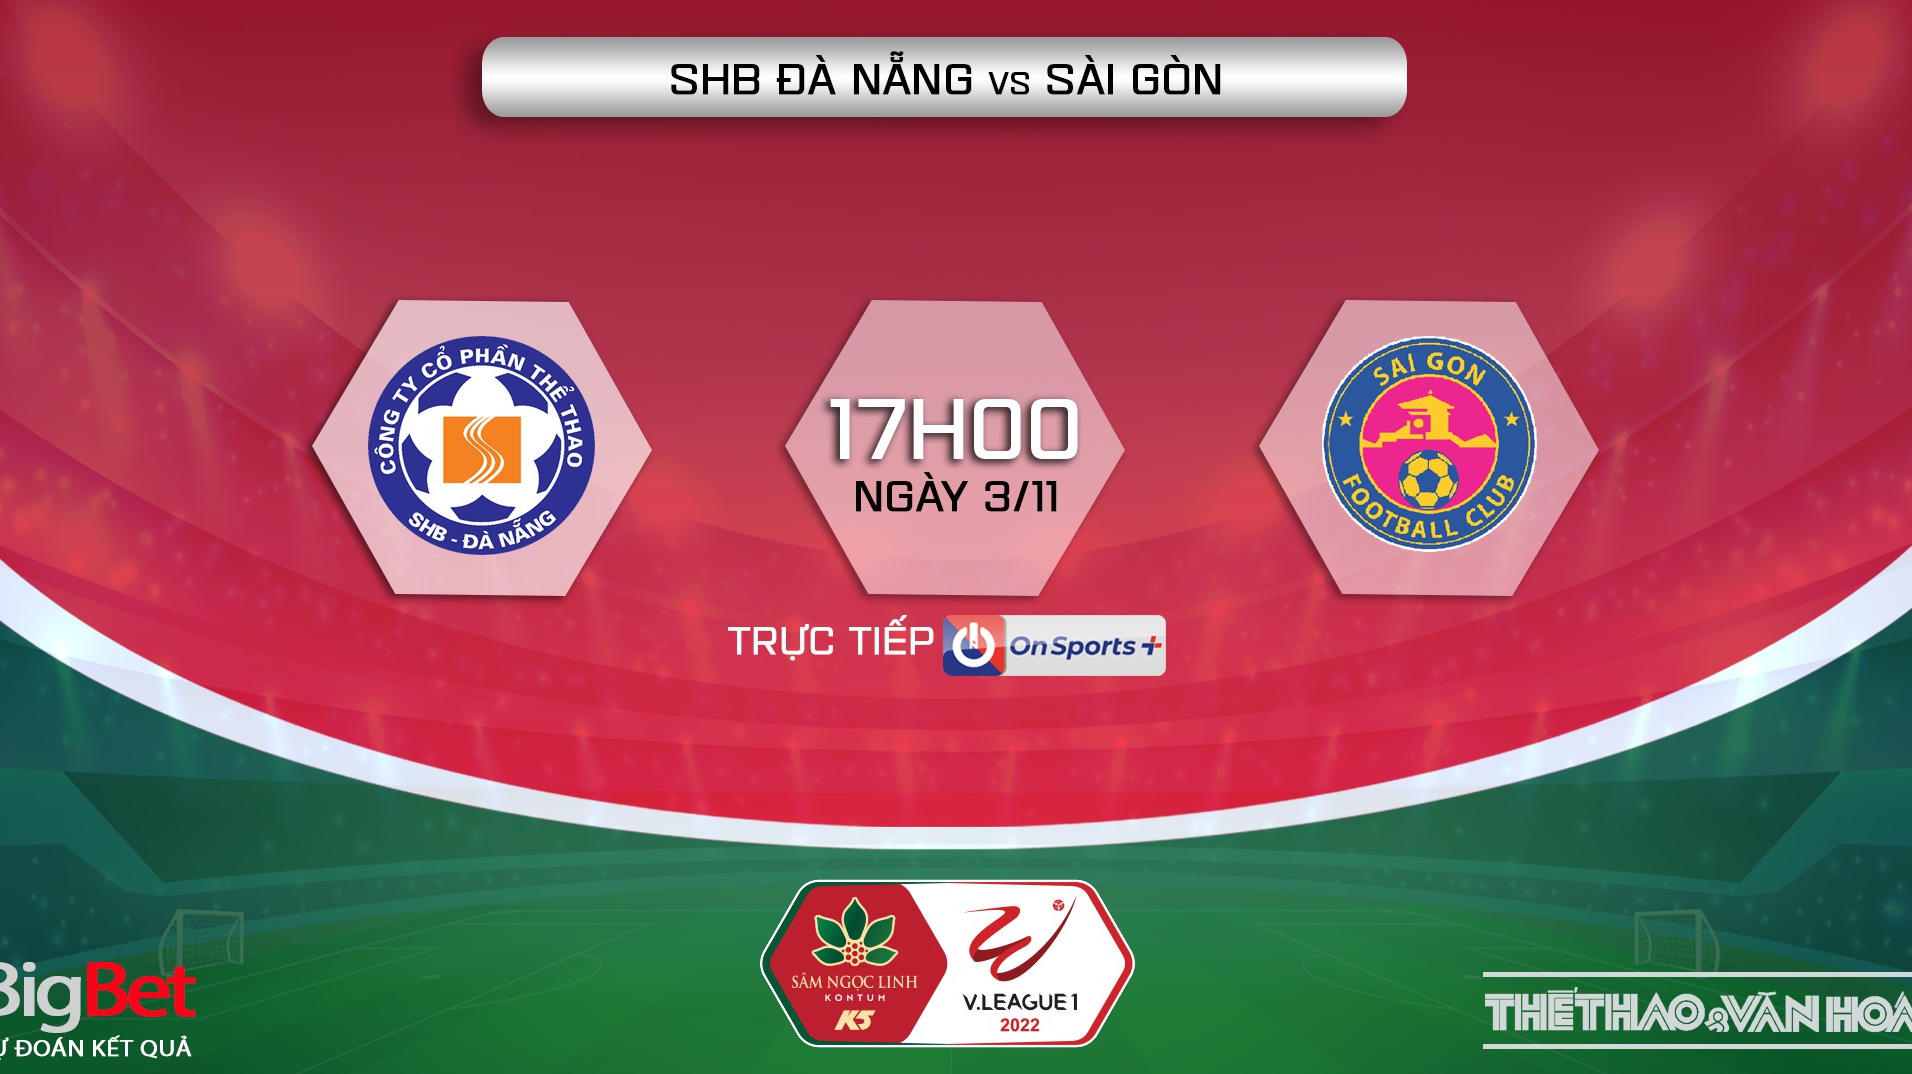 Nhận định bóng đá nhà cái Đà Nẵng vs Sài Gòn. Nhận định, dự đoán bóng đá V-League 2022 (17h00, 3/11)